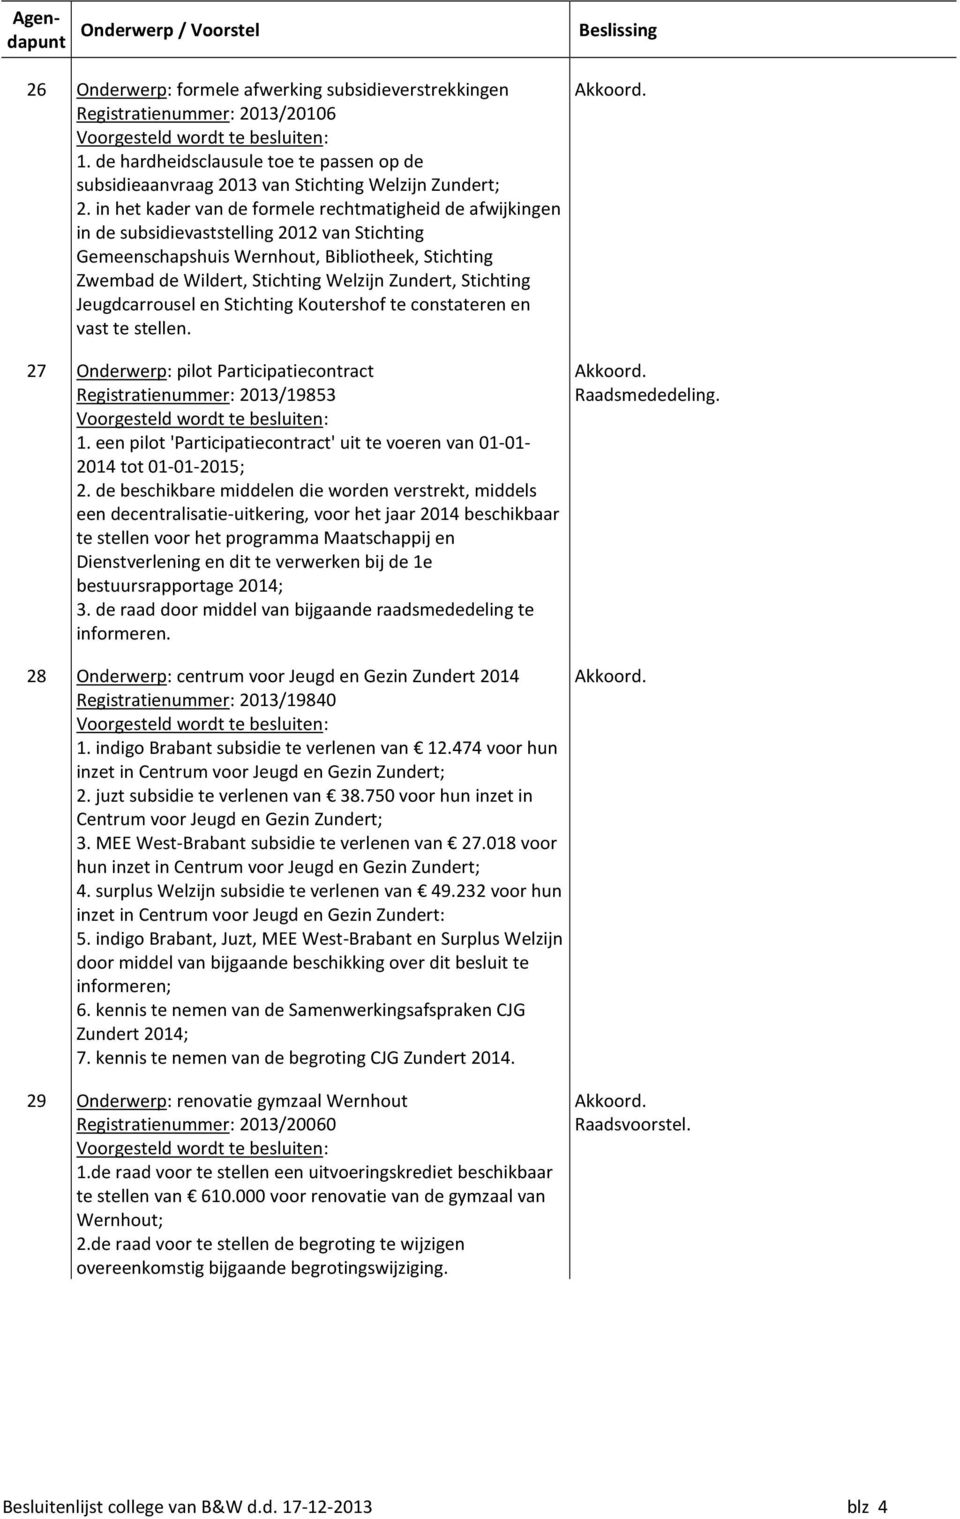 Zundert, Stichting Jeugdcarrousel en Stichting Koutershof te constateren en vast te stellen. 27 Onderwerp: pilot Participatiecontract Registratienummer: 2013/19853 1.